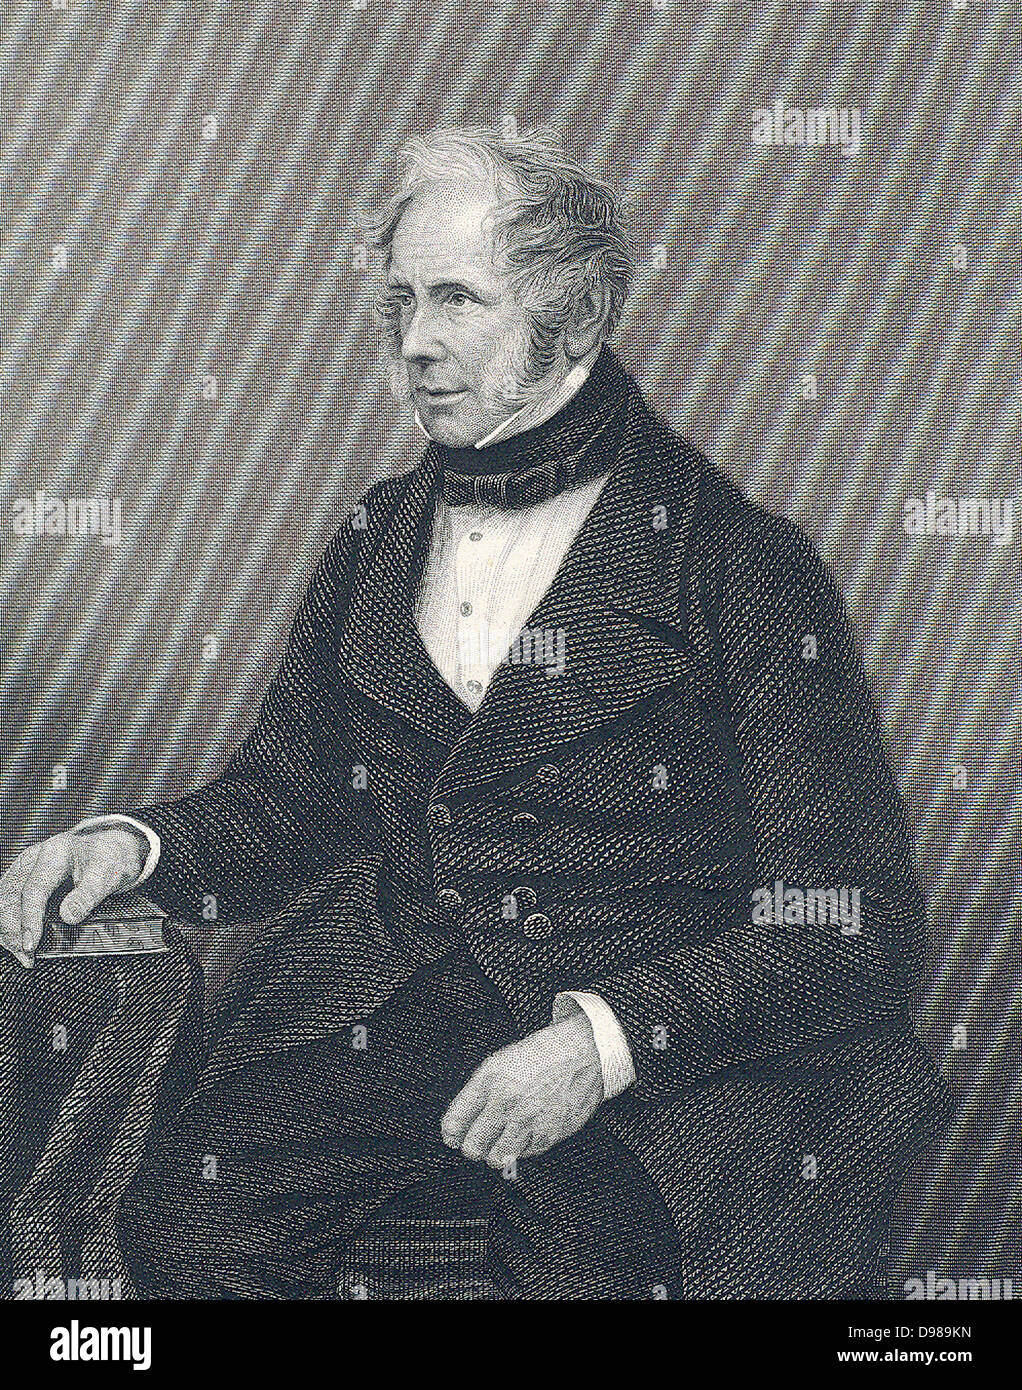 Henry John Temple, terzo Visconte Palmerston (1784-1865) rivolgendosi al Parlamento. Segretario di Stato per gli affari esteri 1830-1841; Il Primo Ministro 1855-1857, 1858, 1858-1865. Incisione. Foto Stock